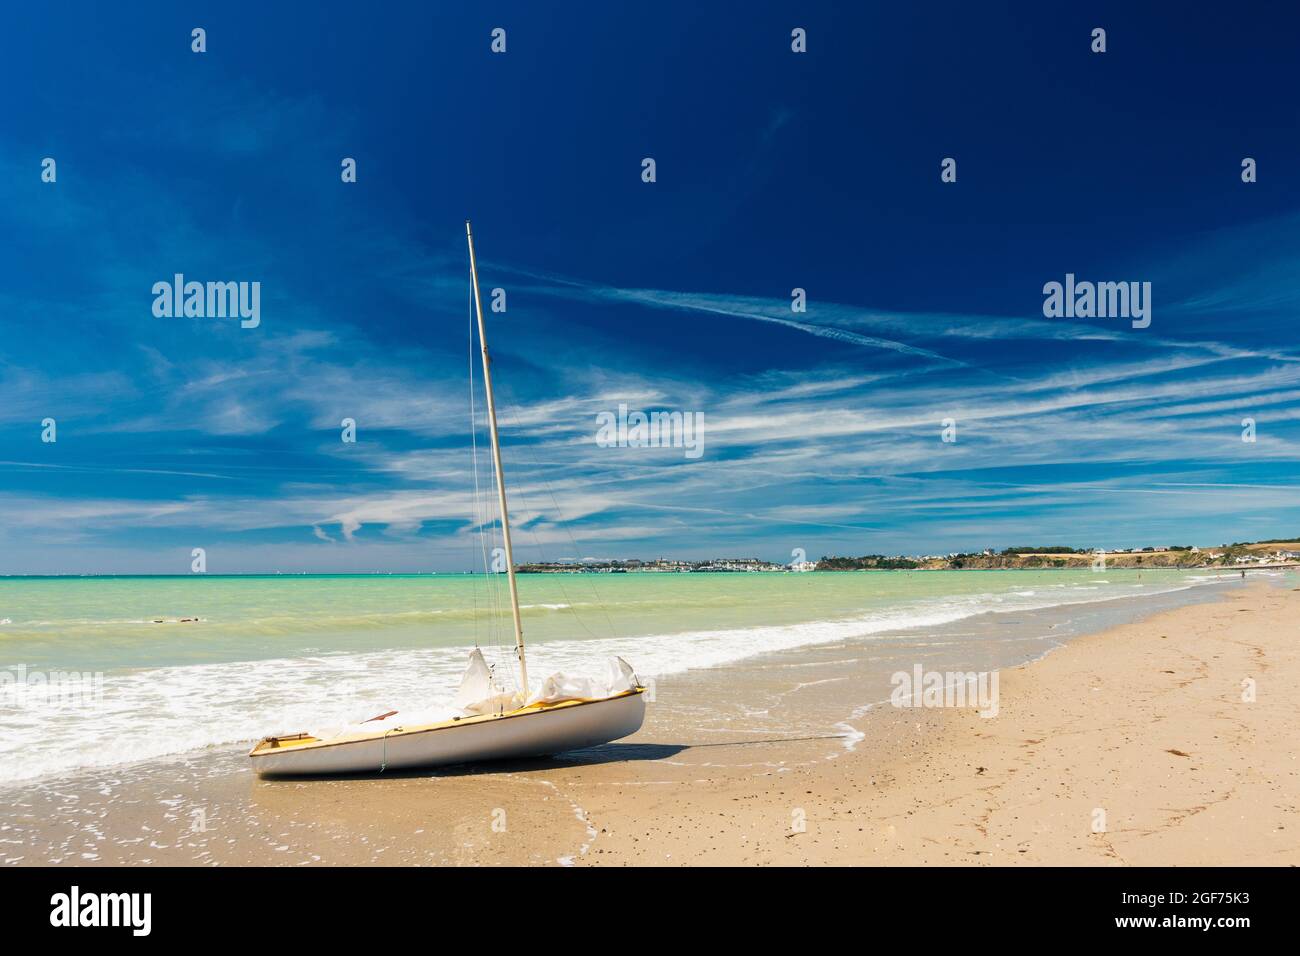 Grande spiaggia sabbiosa e barca a vela arenata su di essa con cielo blu e mare verde Foto Stock